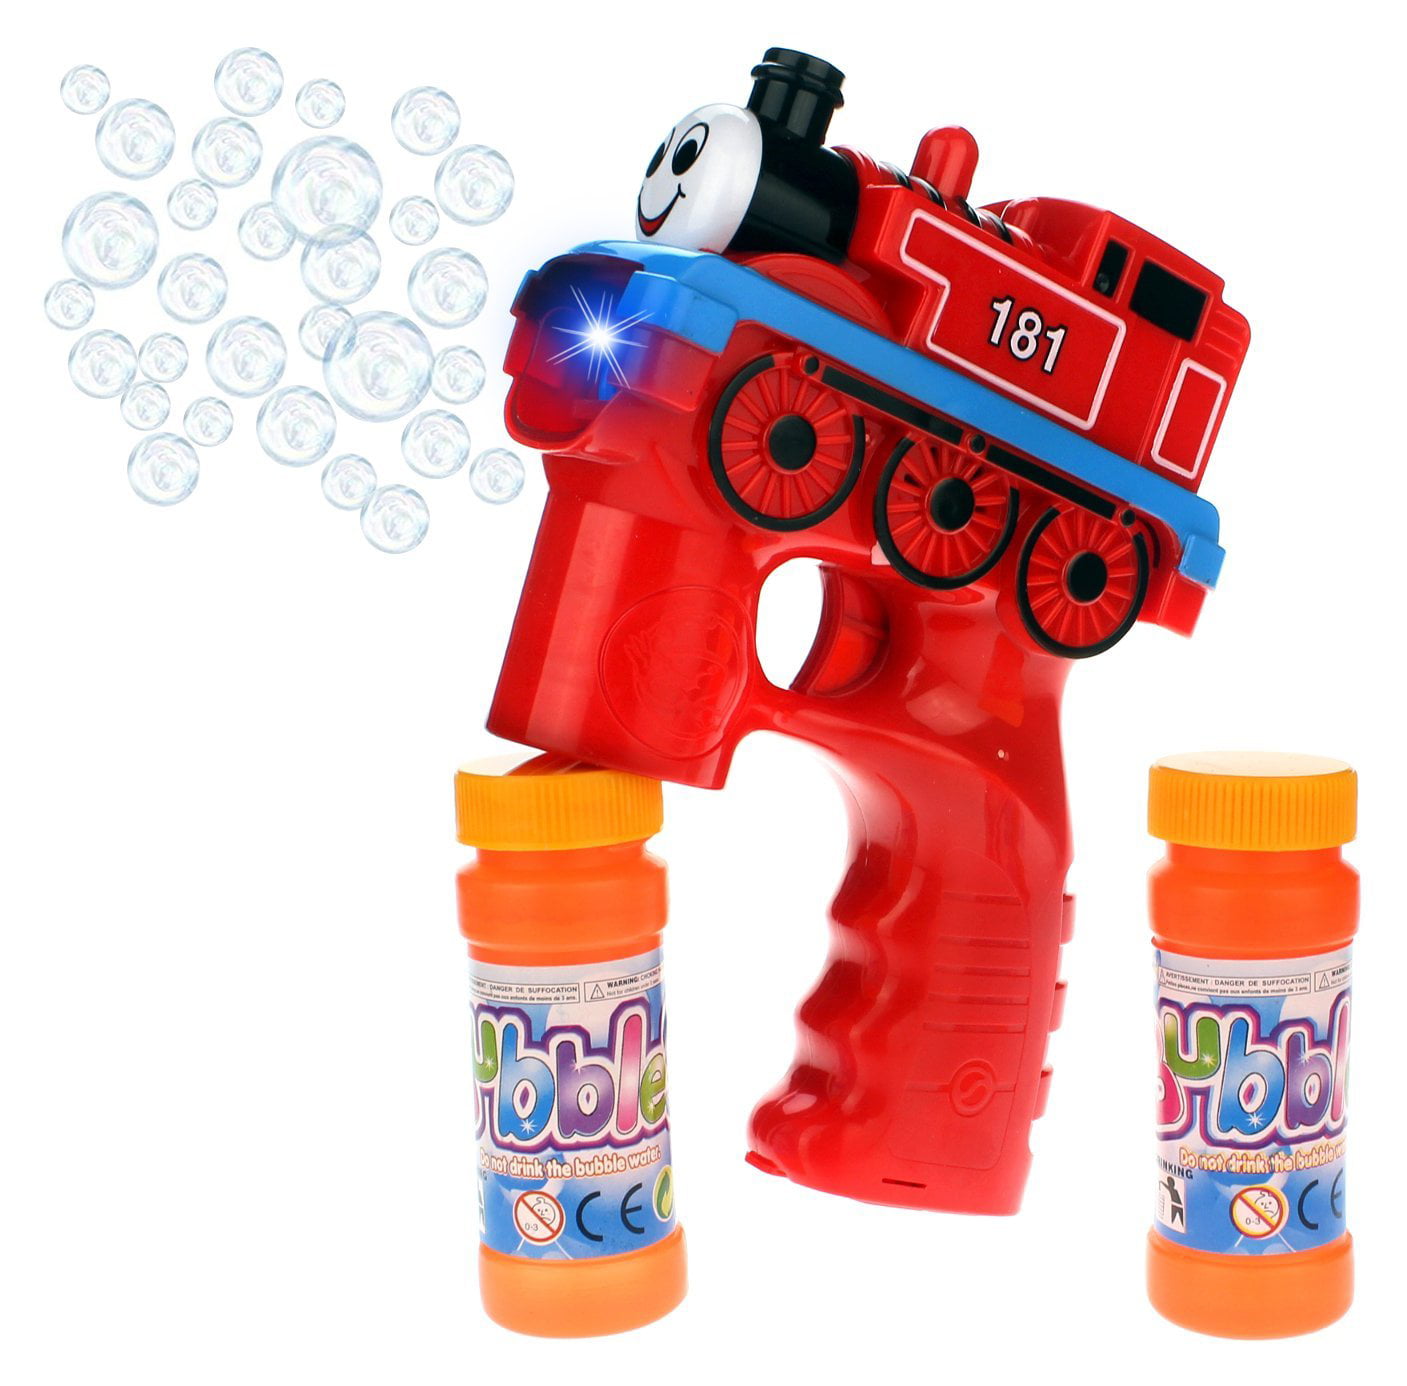 Thomas & Friends Electric Bubble Gun